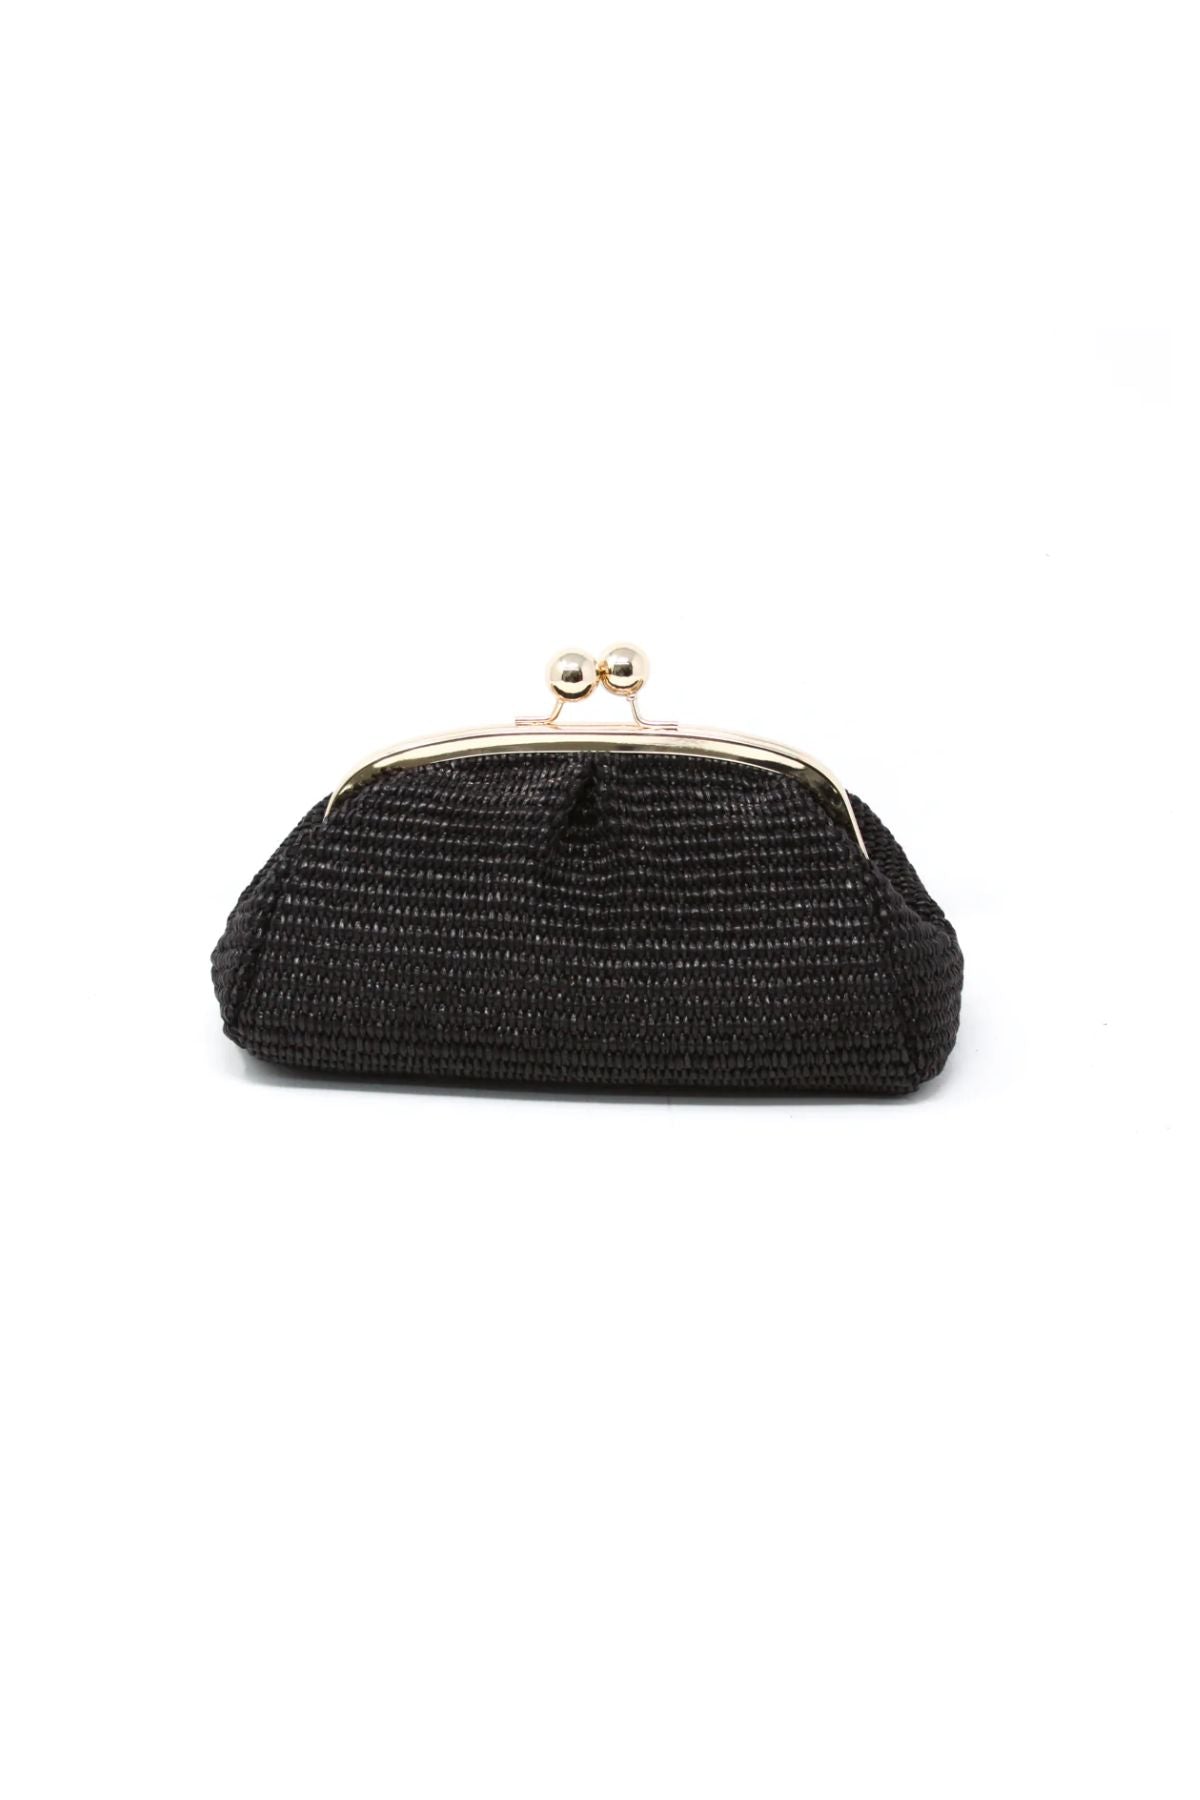 Black rafia handbag